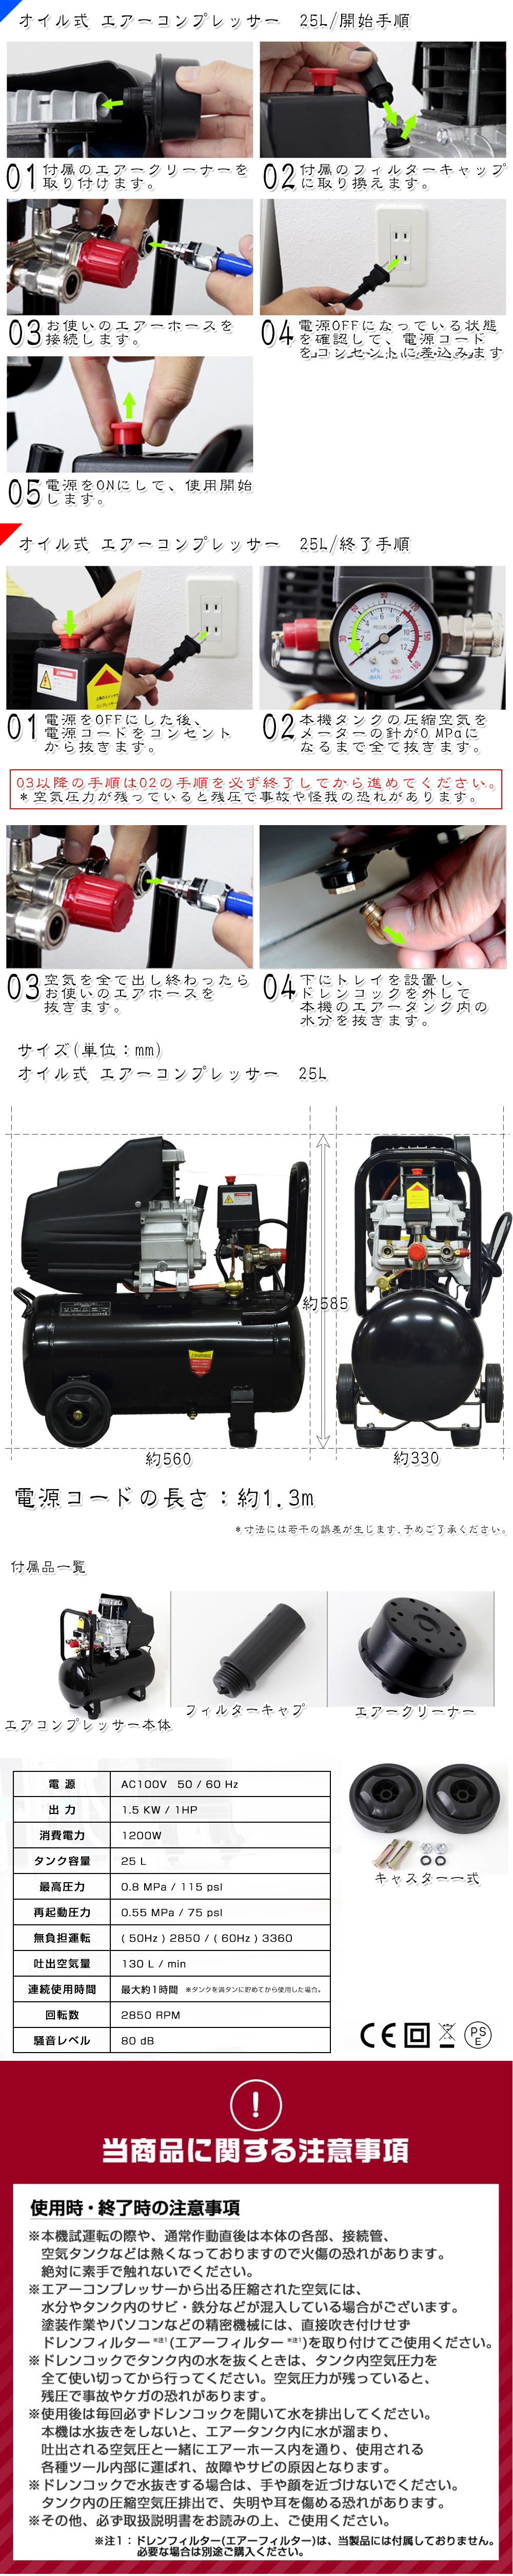 日本未入荷 過圧力自動停止機能 オイル式 100V エアーコンプレッサー エアーツール 車 小型 0.8Mpa 25L 容量 工具 その他 